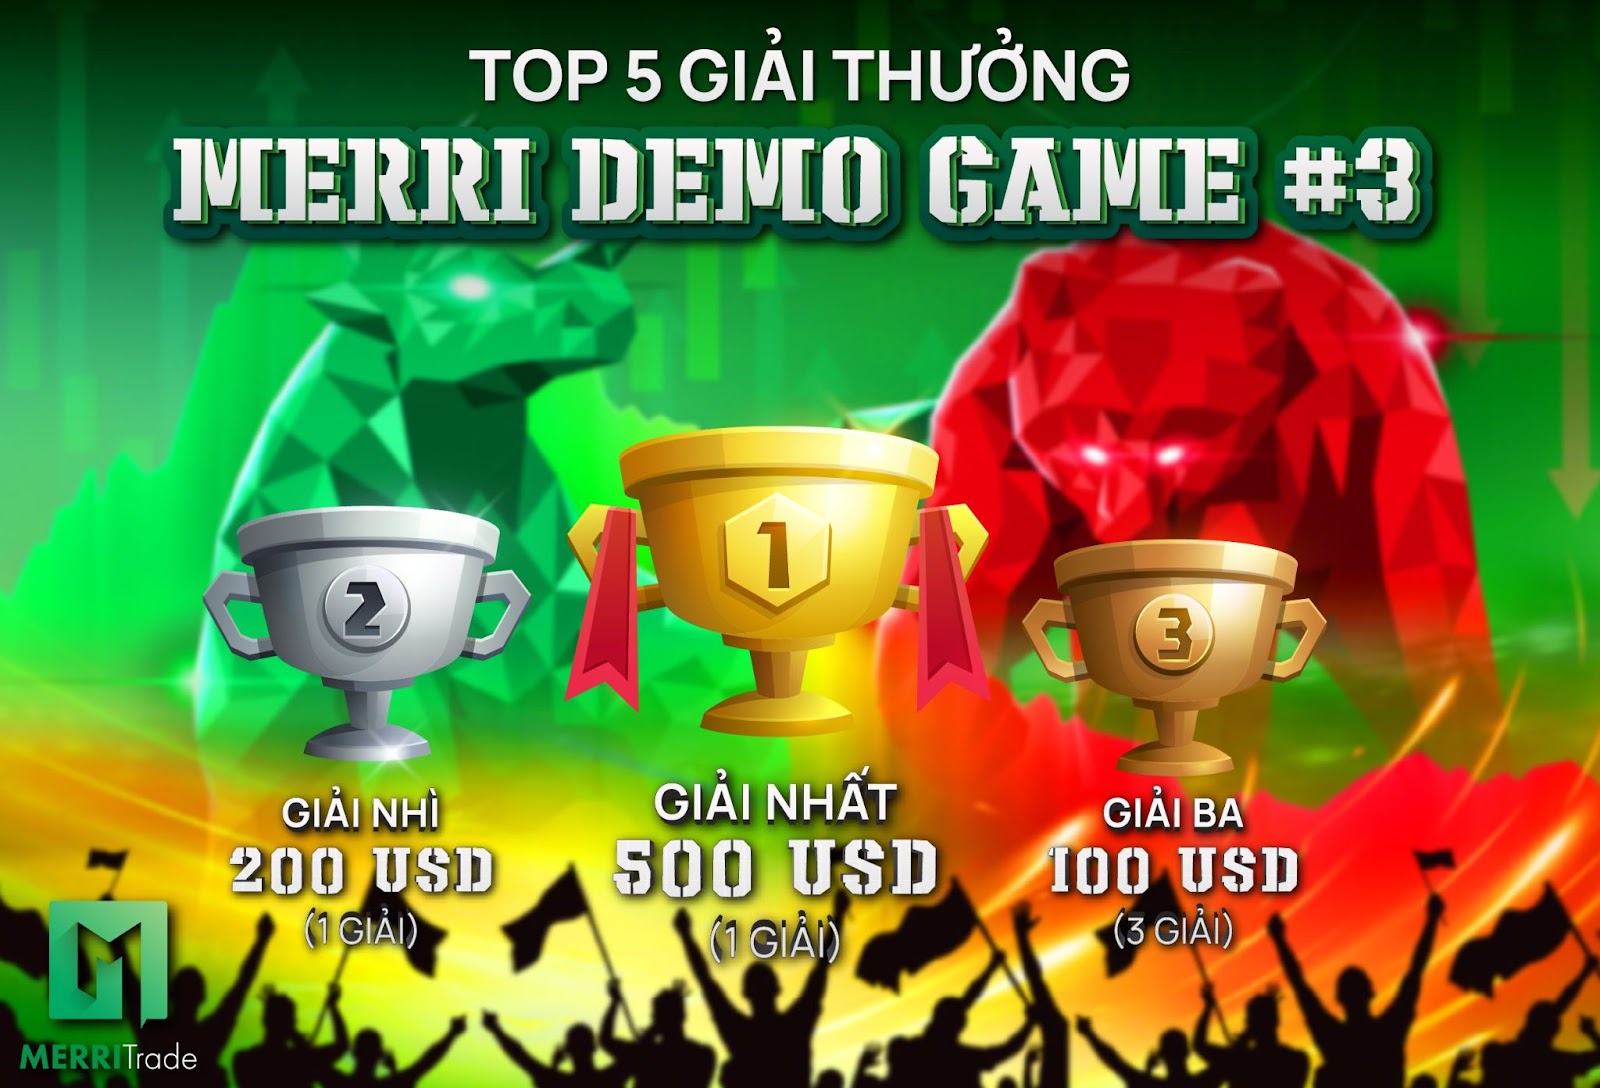 Thăng Hạng Merri Demo Game #3 - Rinh Ngay 500 USD hình - merritrade